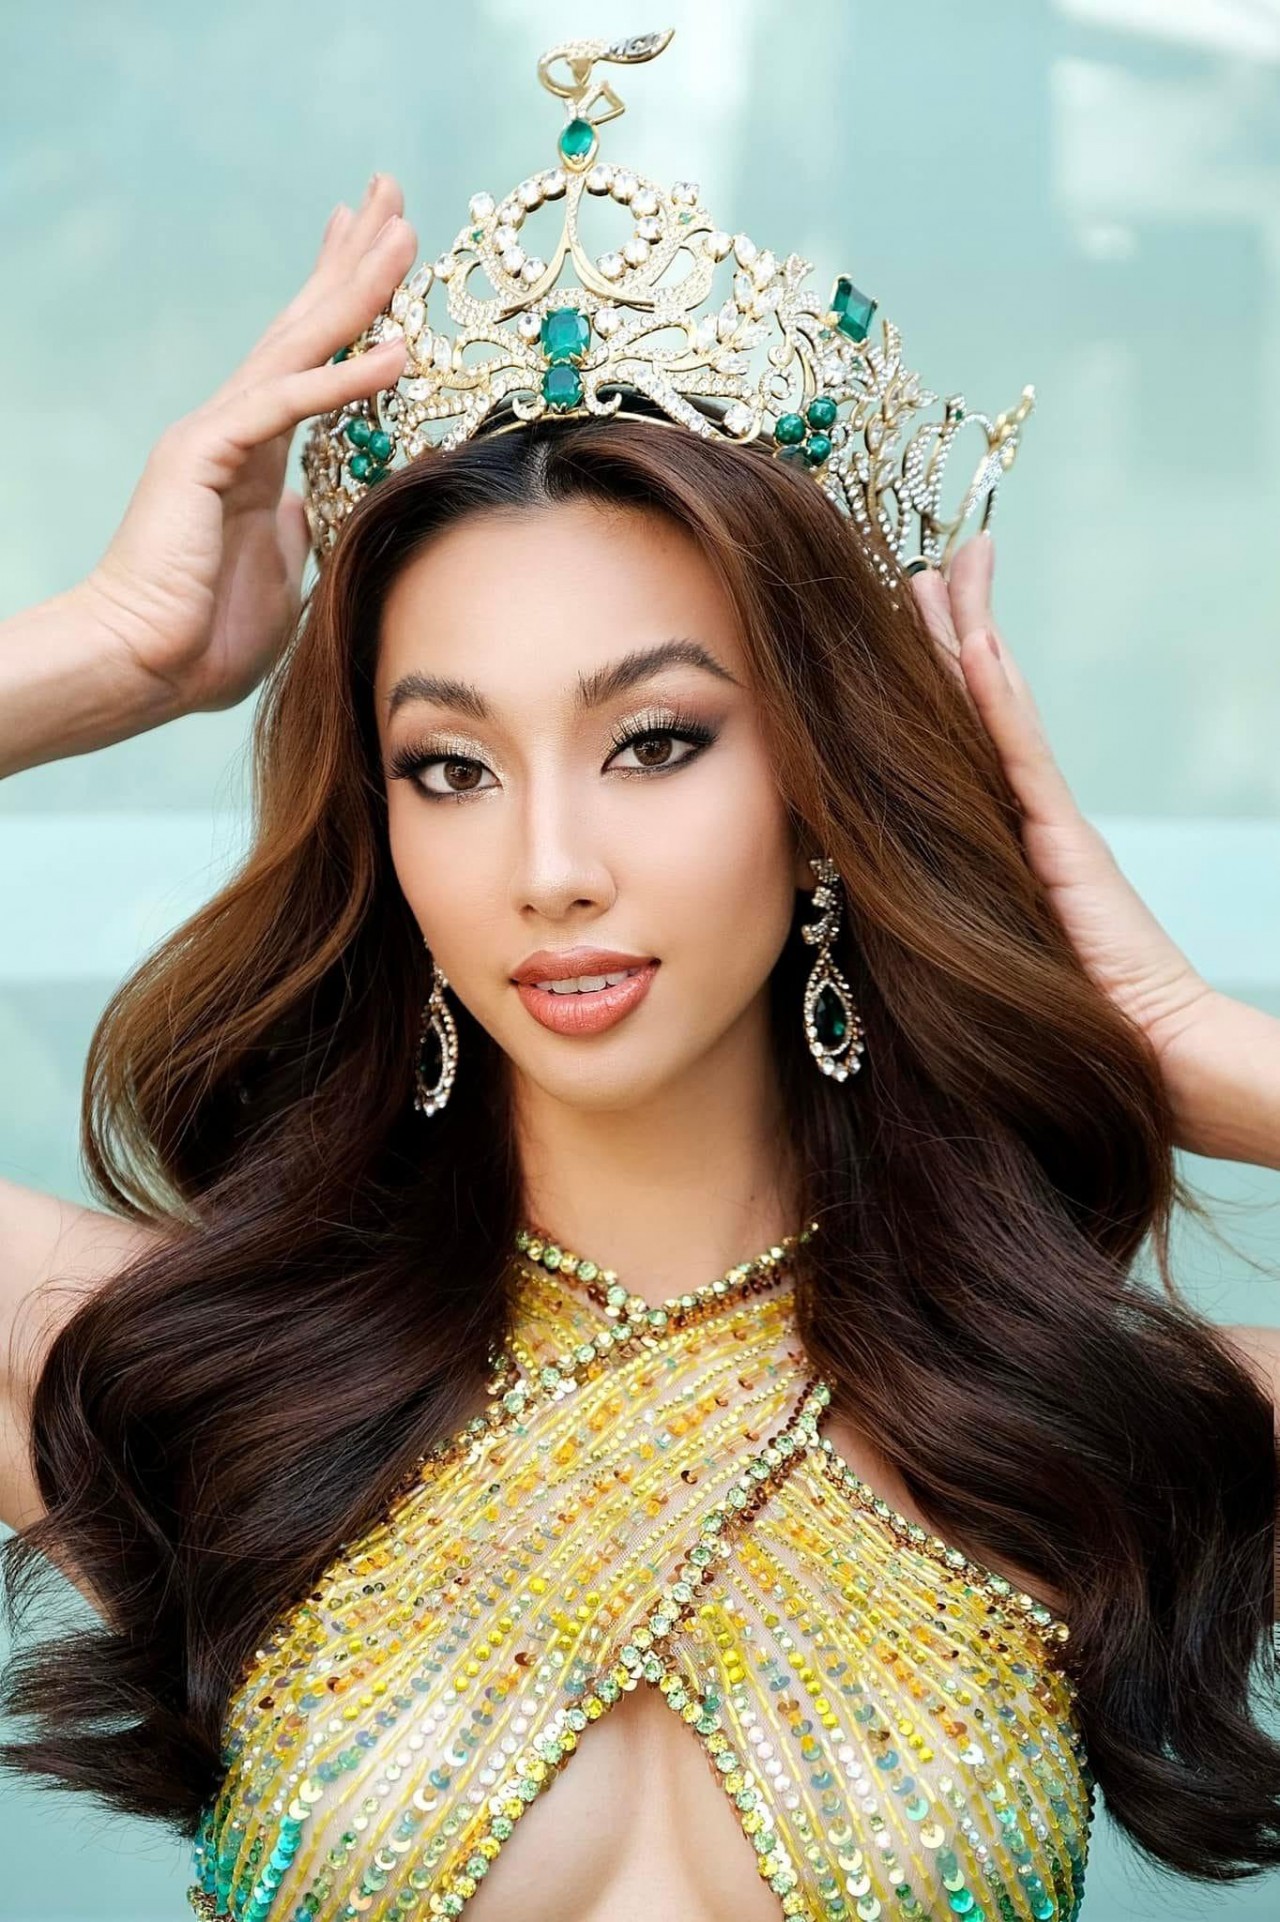 Vietnam Crown Second in Global Beauties’ Ranking